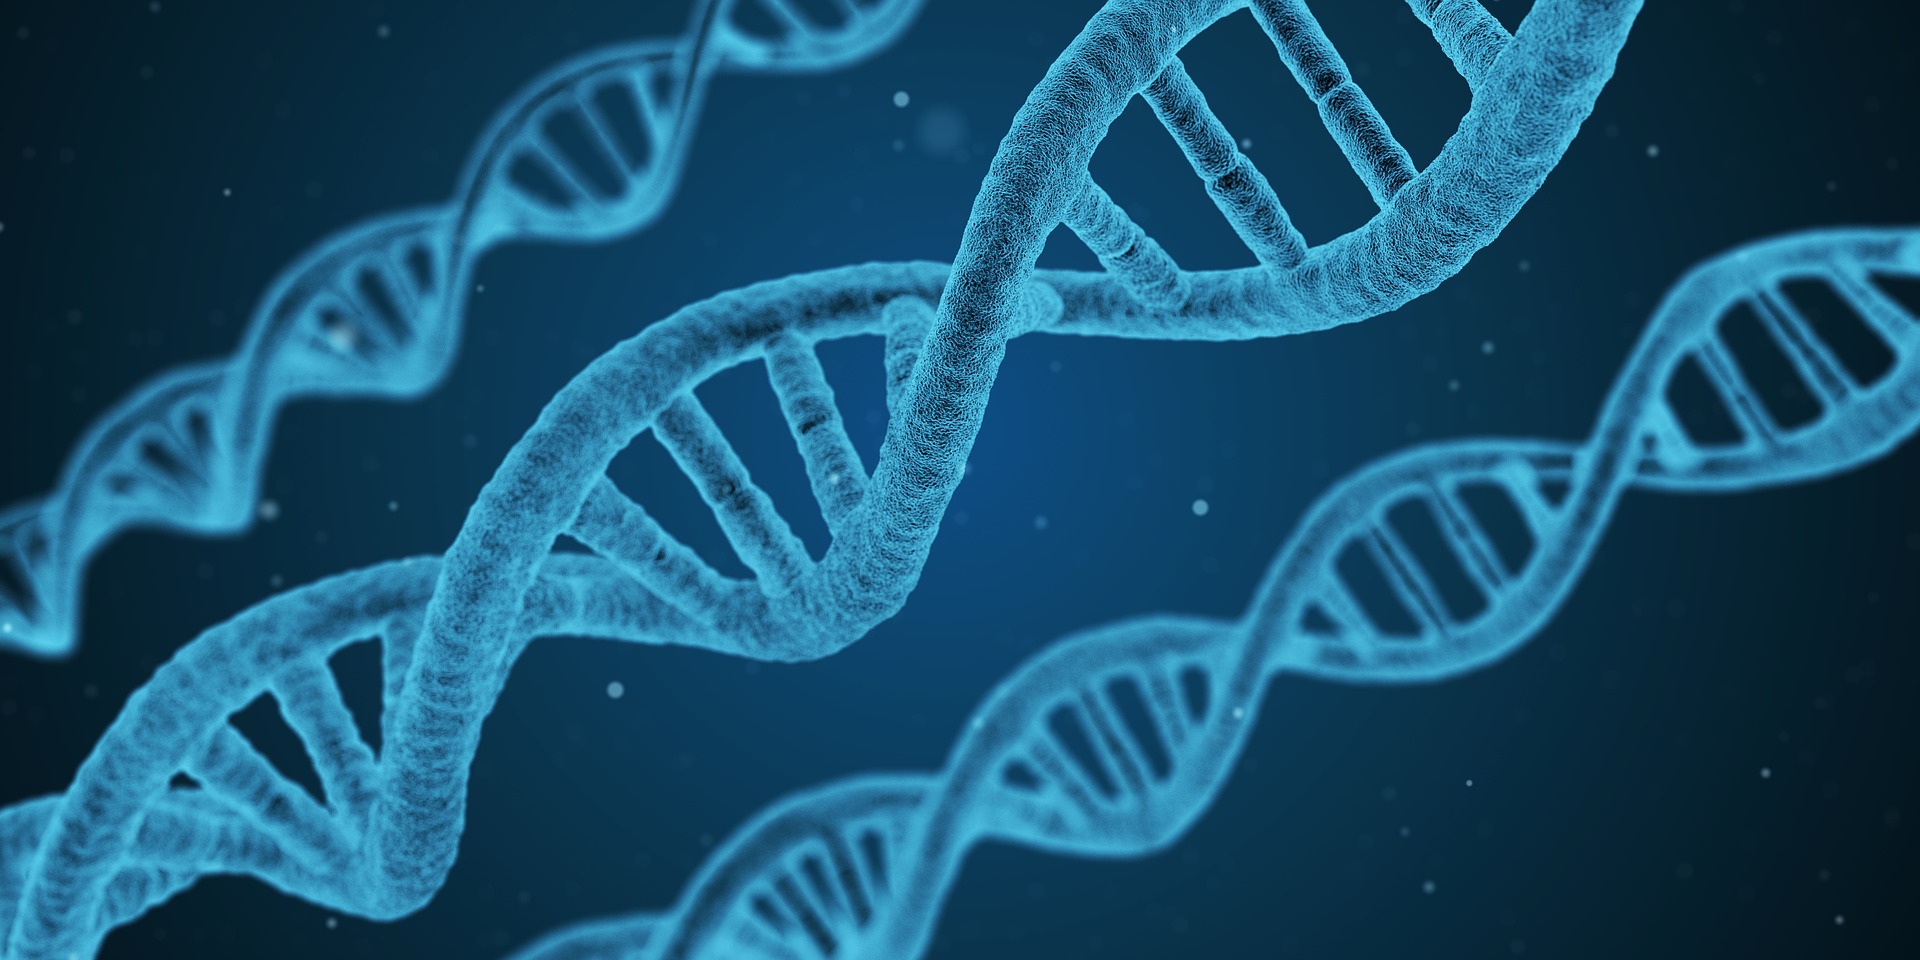 La genética es esa parte de la biología que estudia los genes y los mecanismos que regulan la transmisión de los caracteres hereditarios